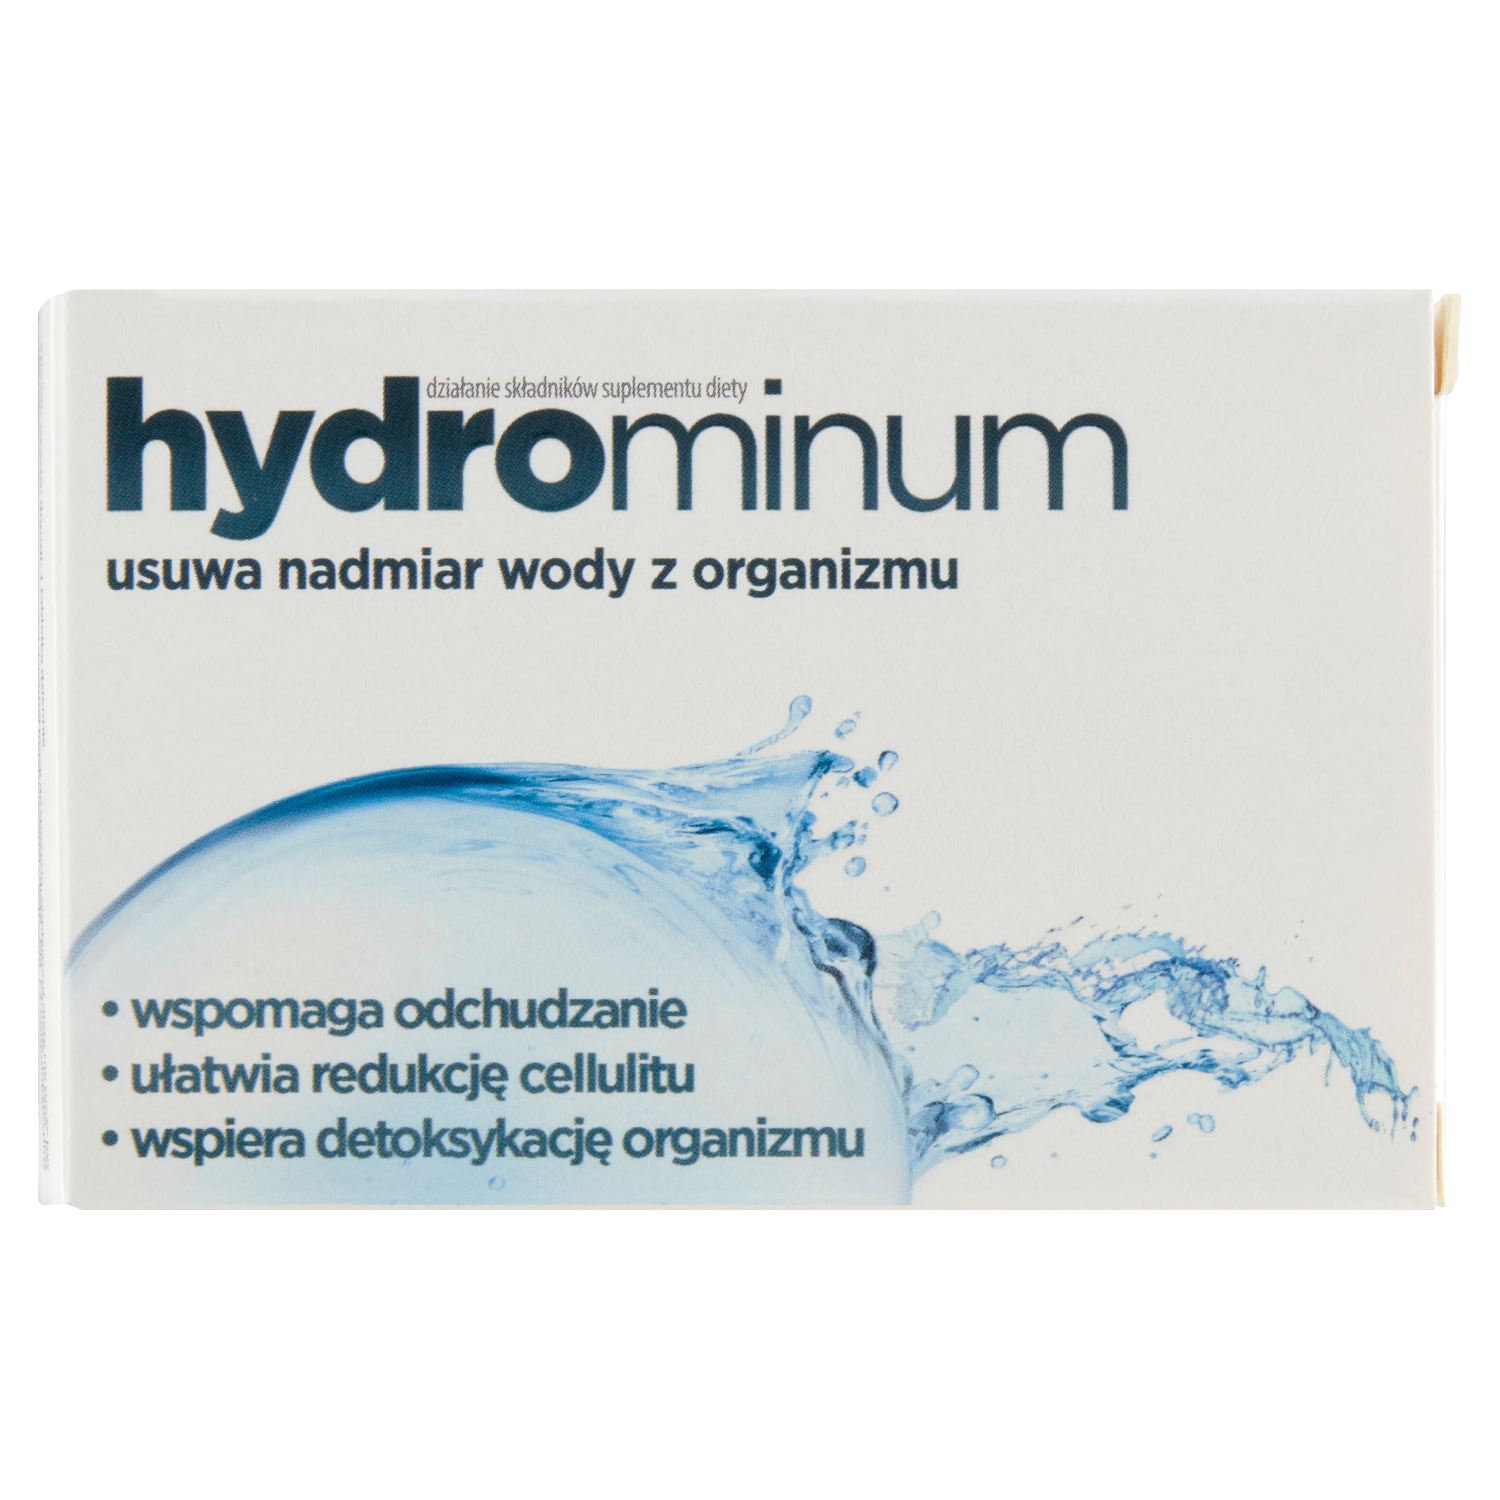 Hydrominum биологически активная добавка, 30 таблеток/1 упаковка биологически активная добавка экко плюс бифидумбактерин 1000 30 таблеток